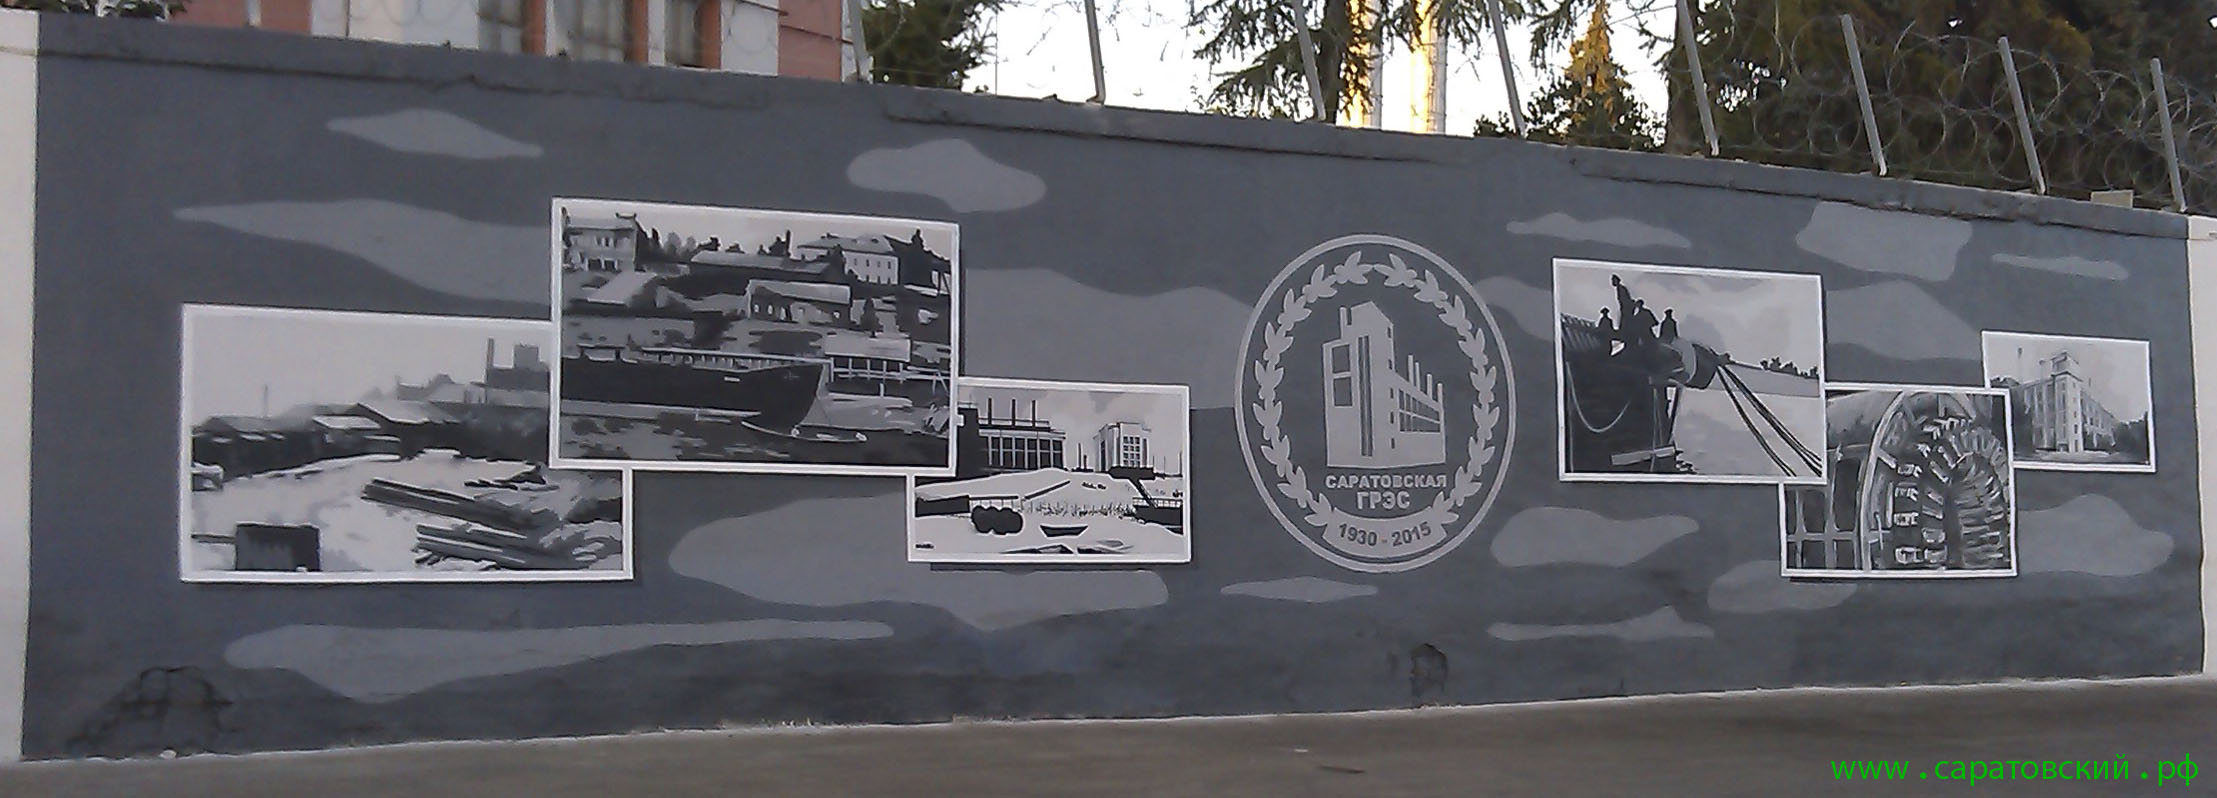 Саратовская набережная, граффити: Саратовская ГРЭС